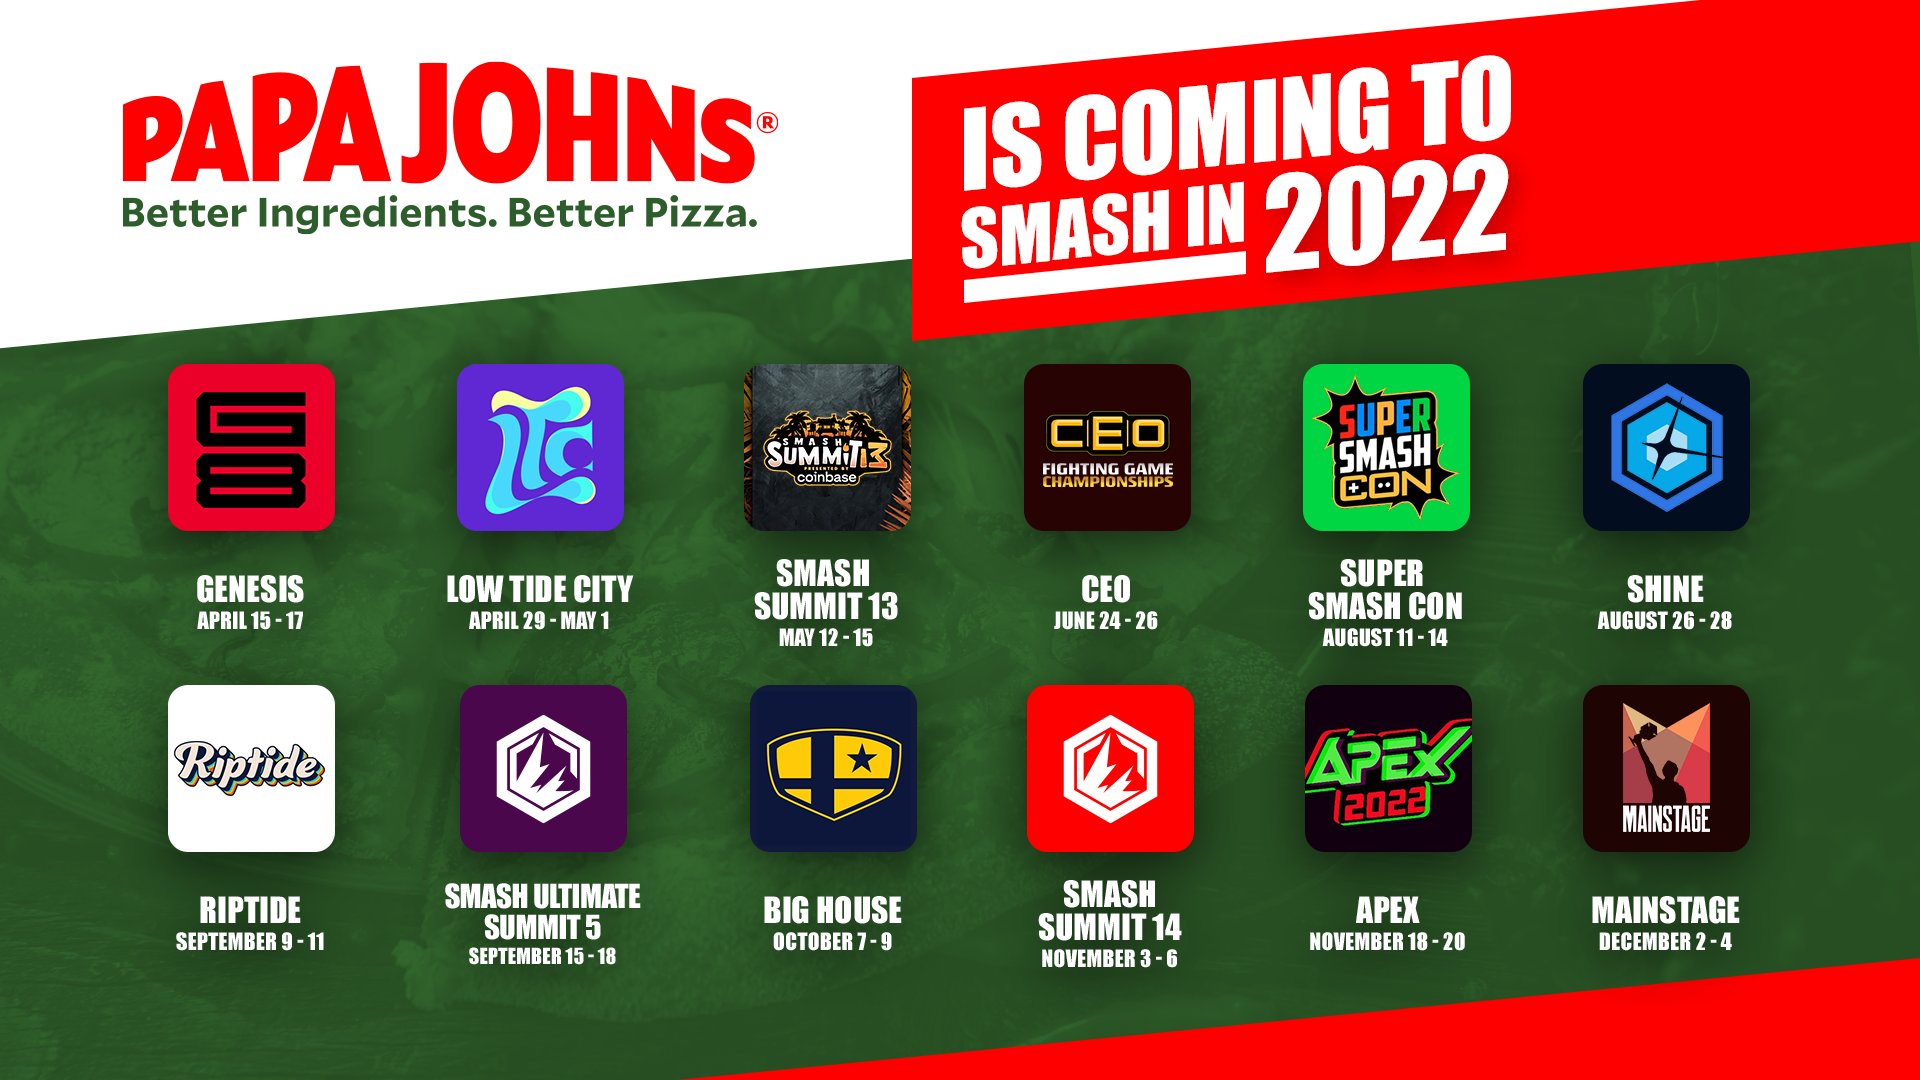 Papa John's, prochain Super Smash Bros. participé aux tournois!